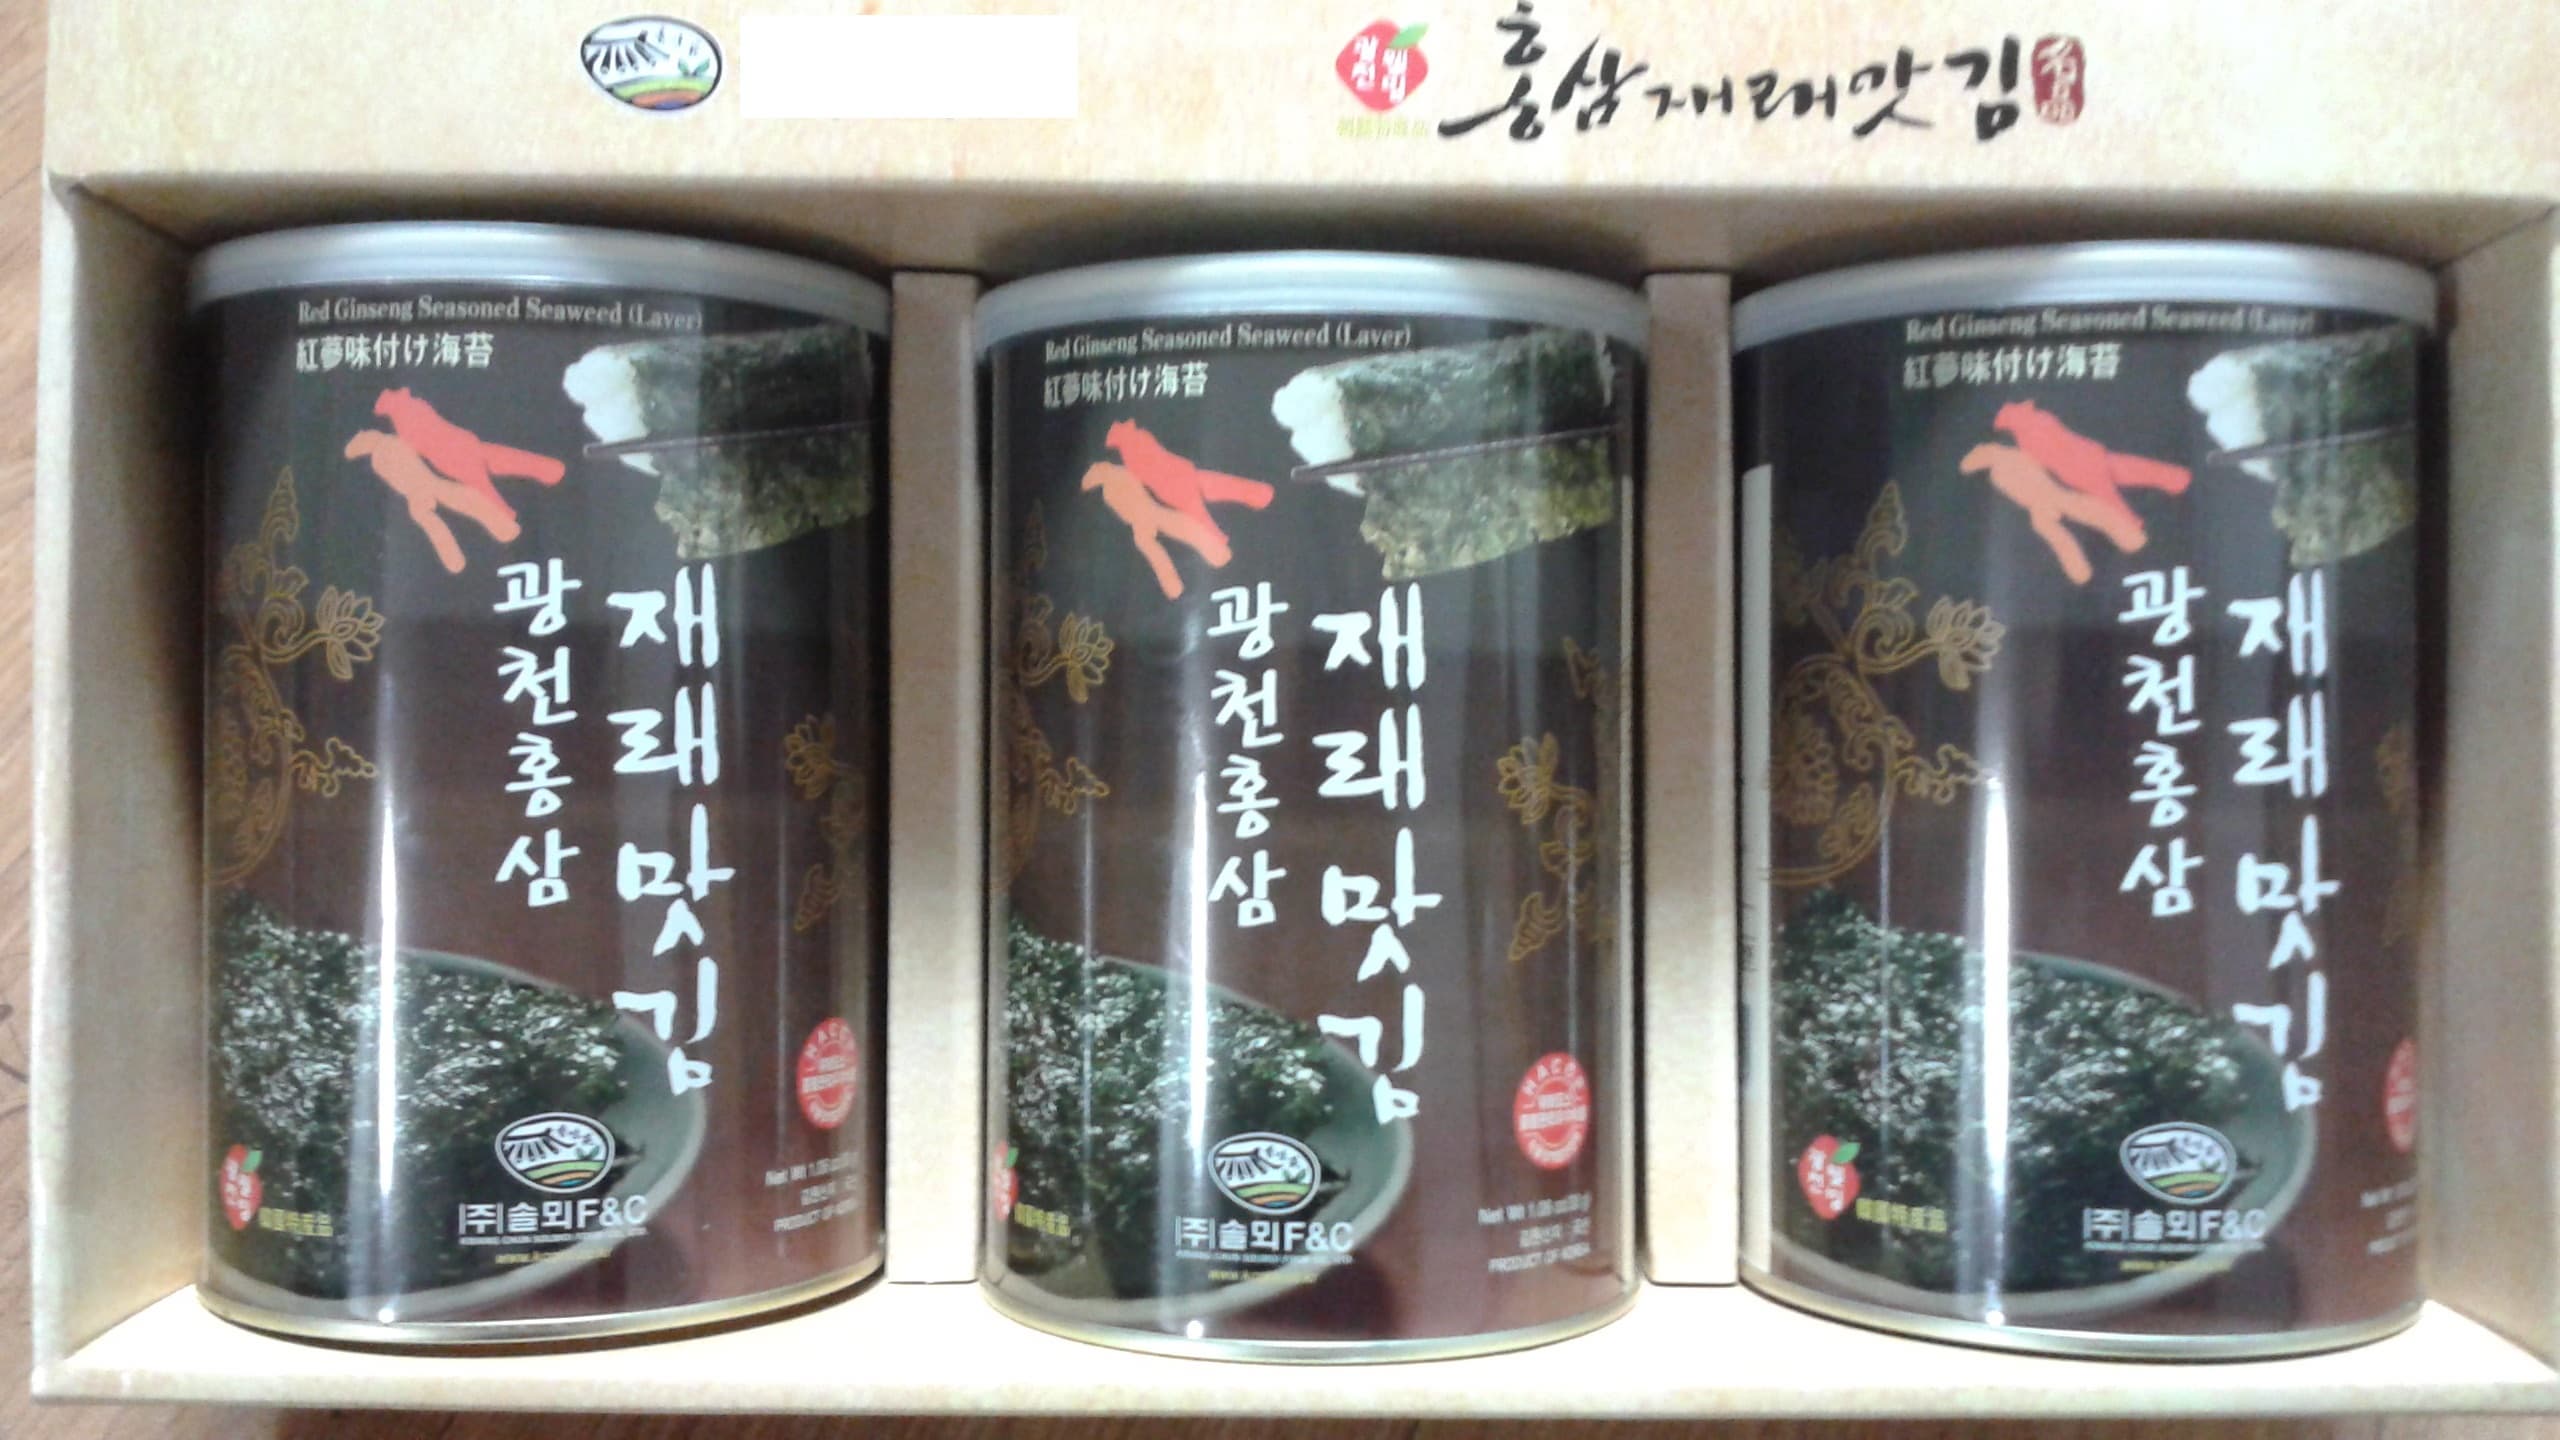 -Jinseng- Red ginseng seaweed